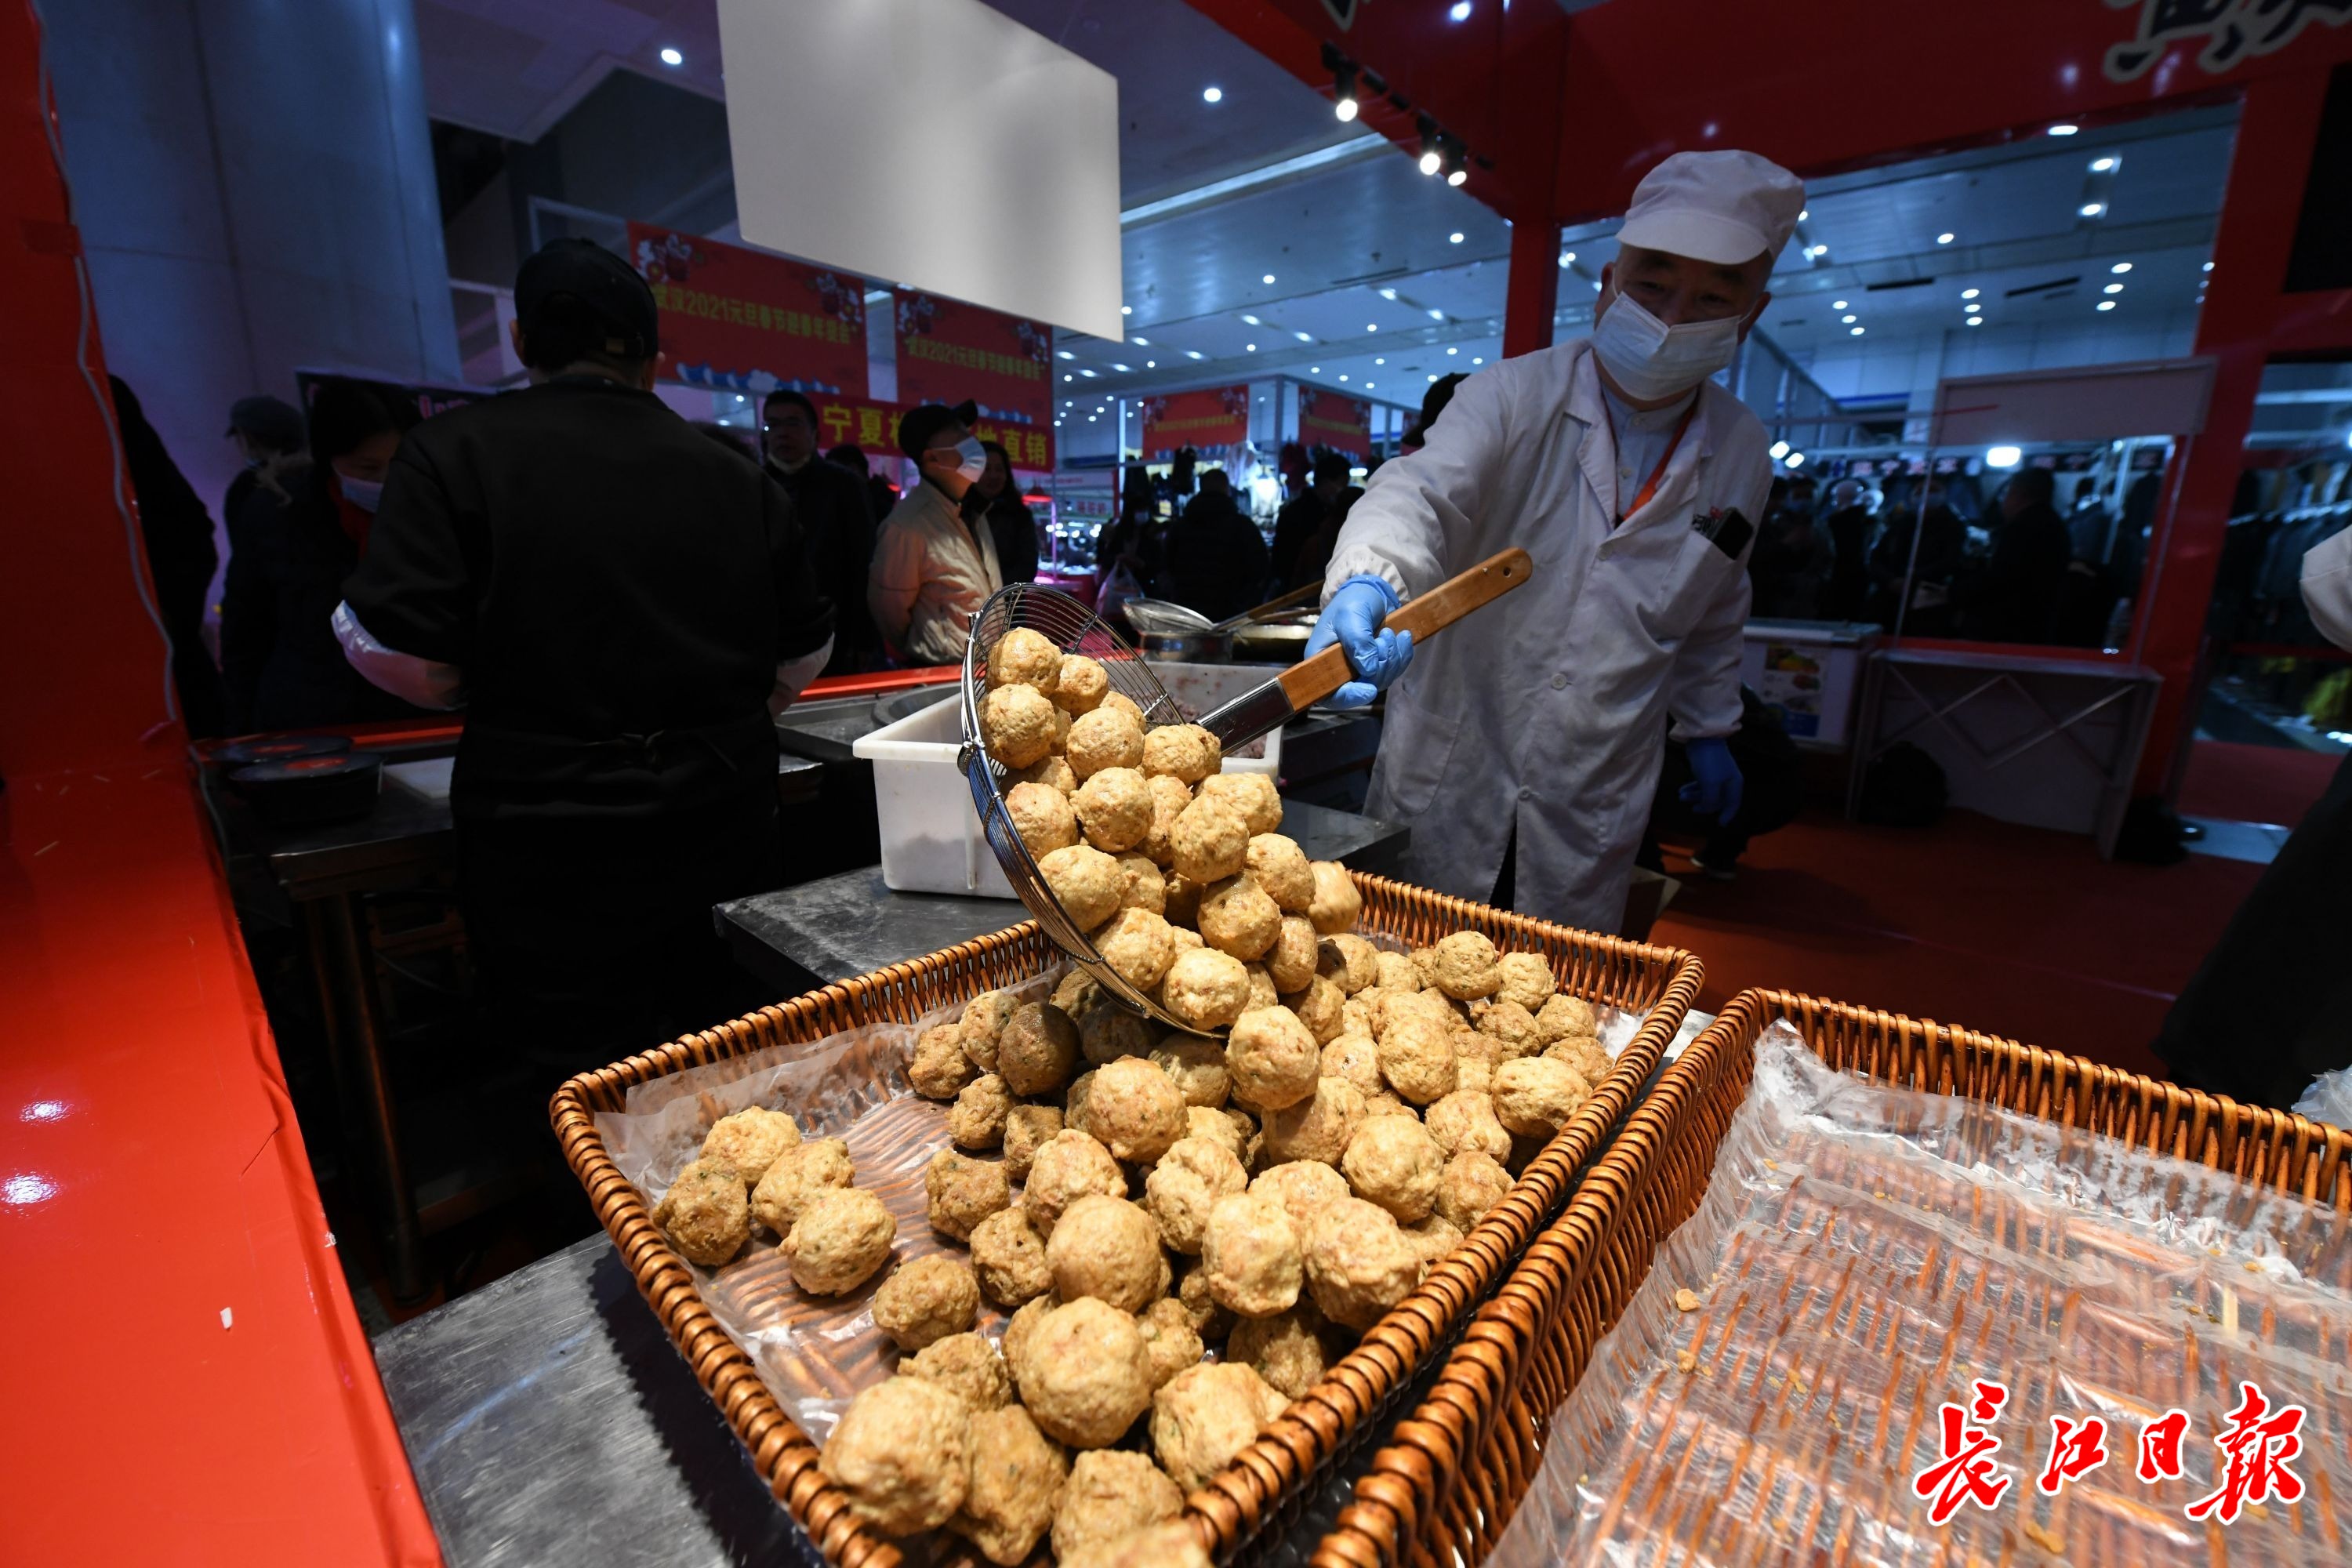 12月11日,食博会二期在武汉国际会展中心举办,吸引了众多市民前来淘货